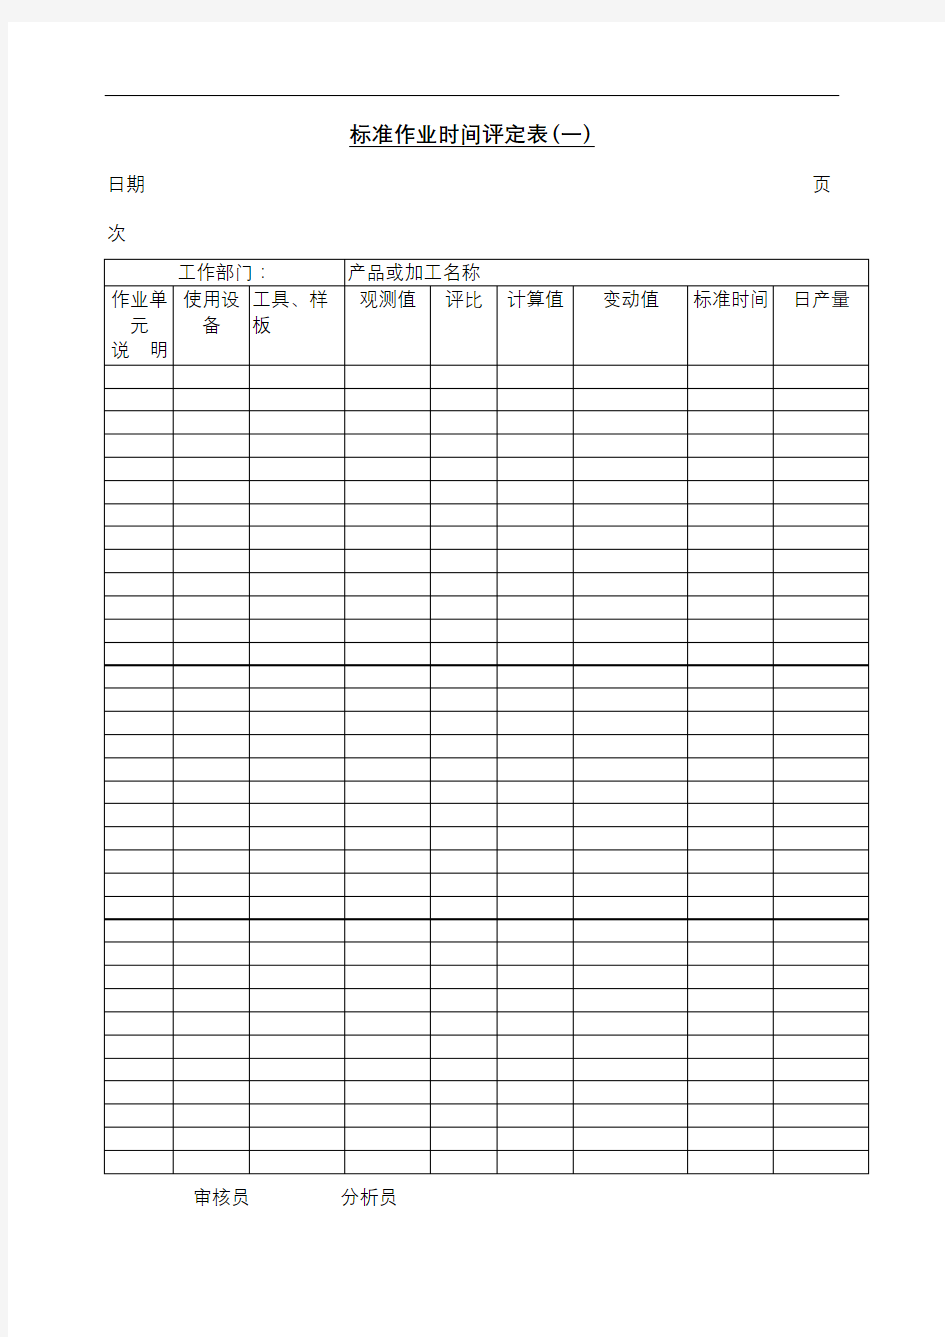 标准作业时间评定表表格格式